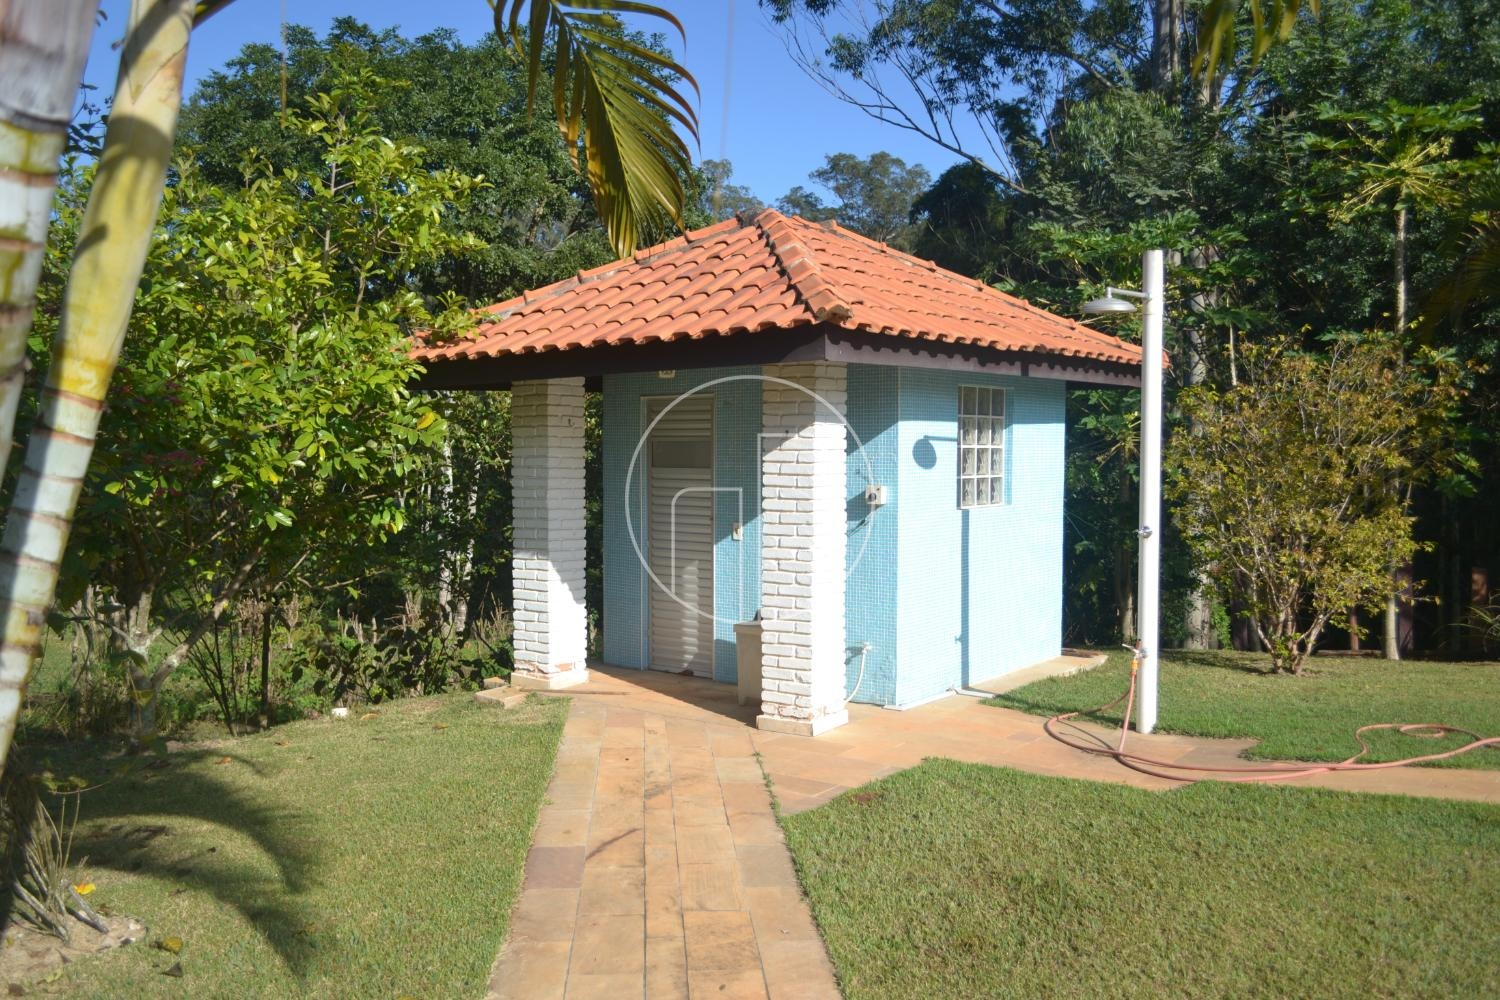 Piccoloto -Casa à venda no Sousas em Campinas